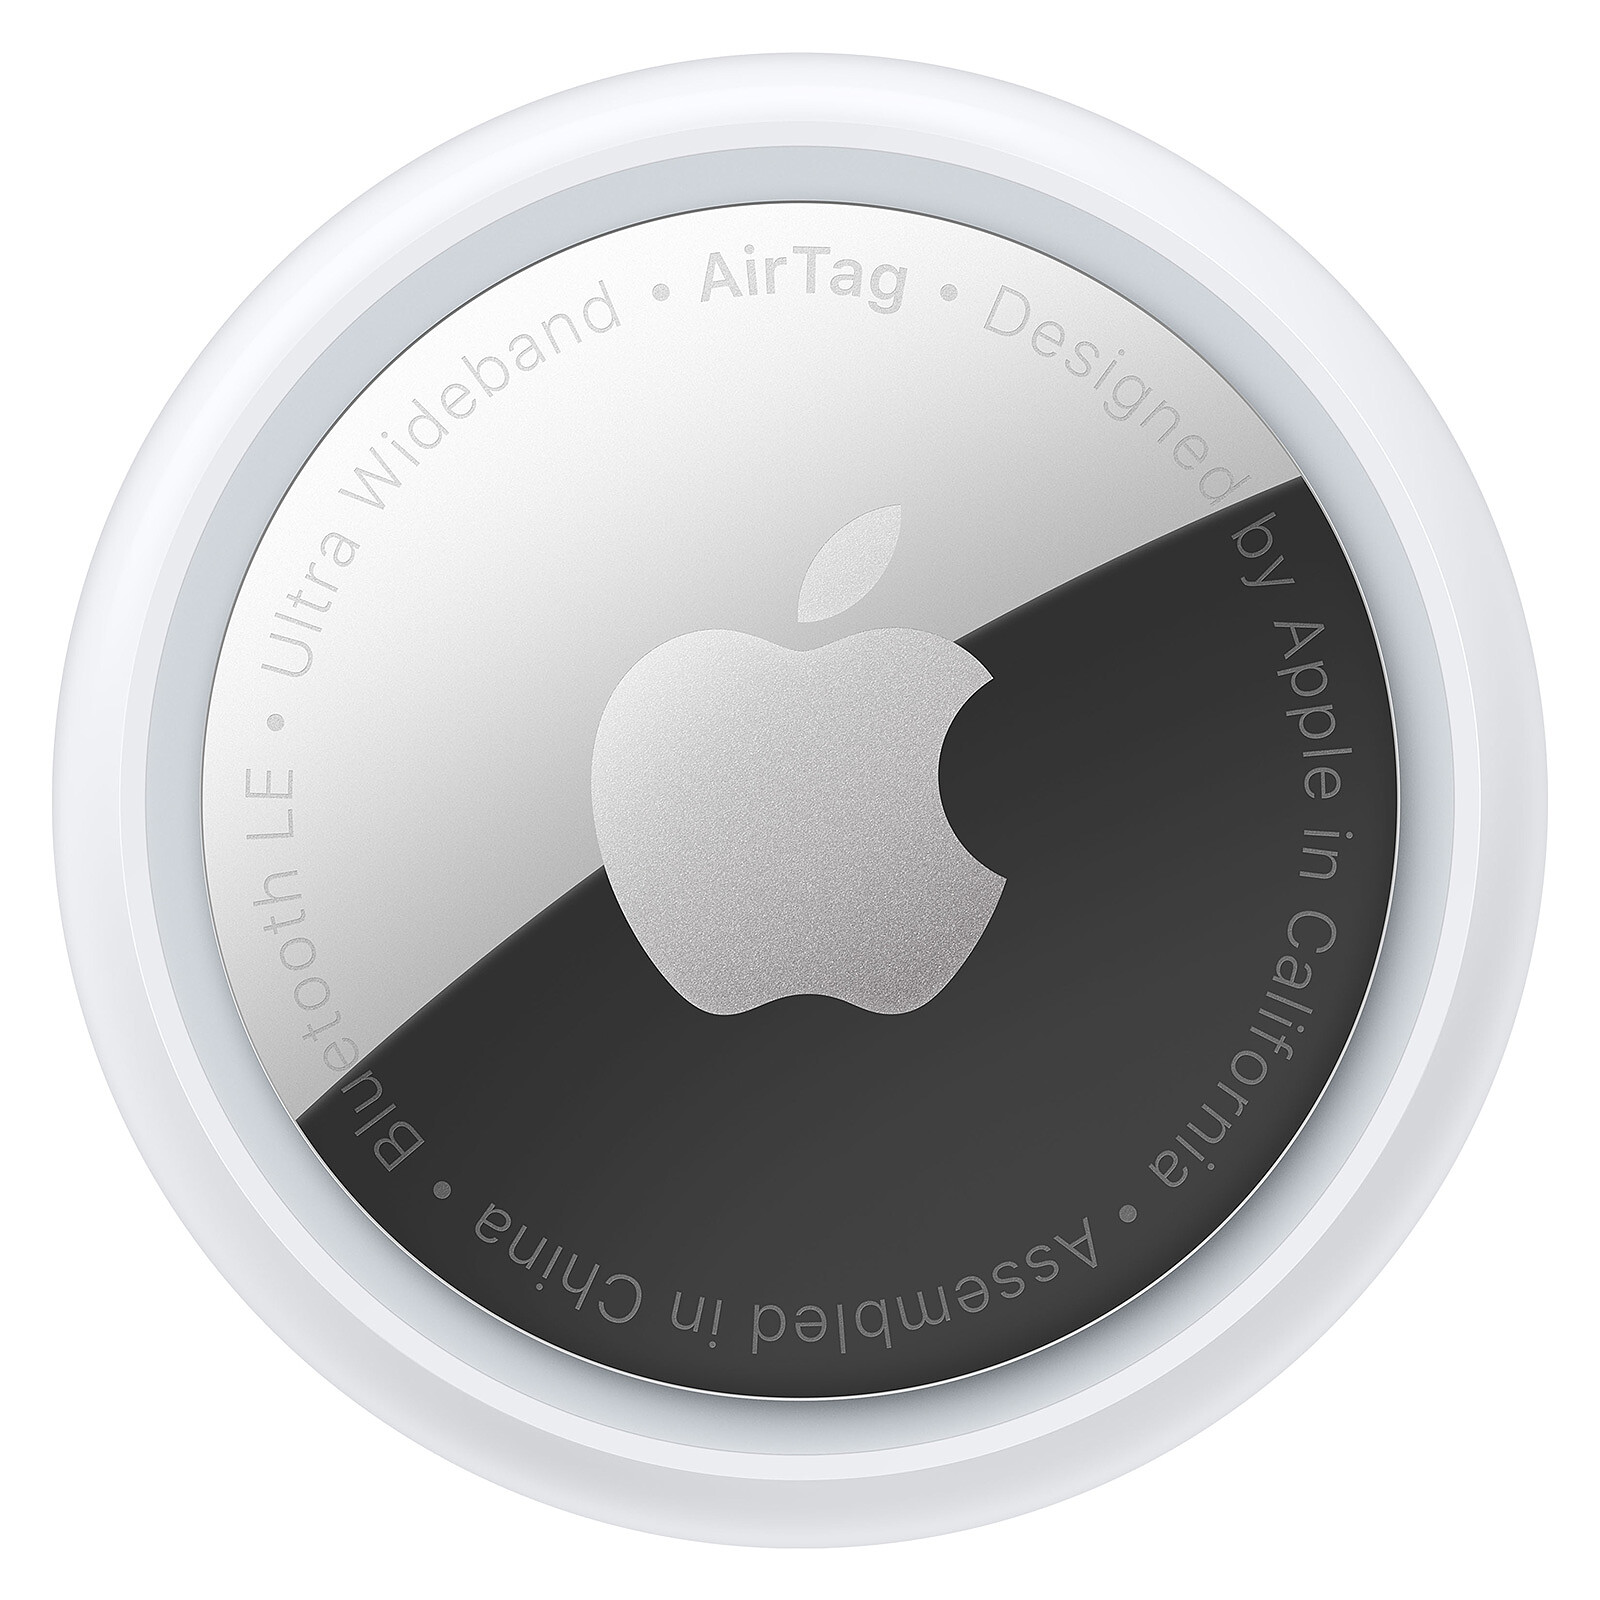 Les 5 meilleurs accessoires pour Apple Airtag 